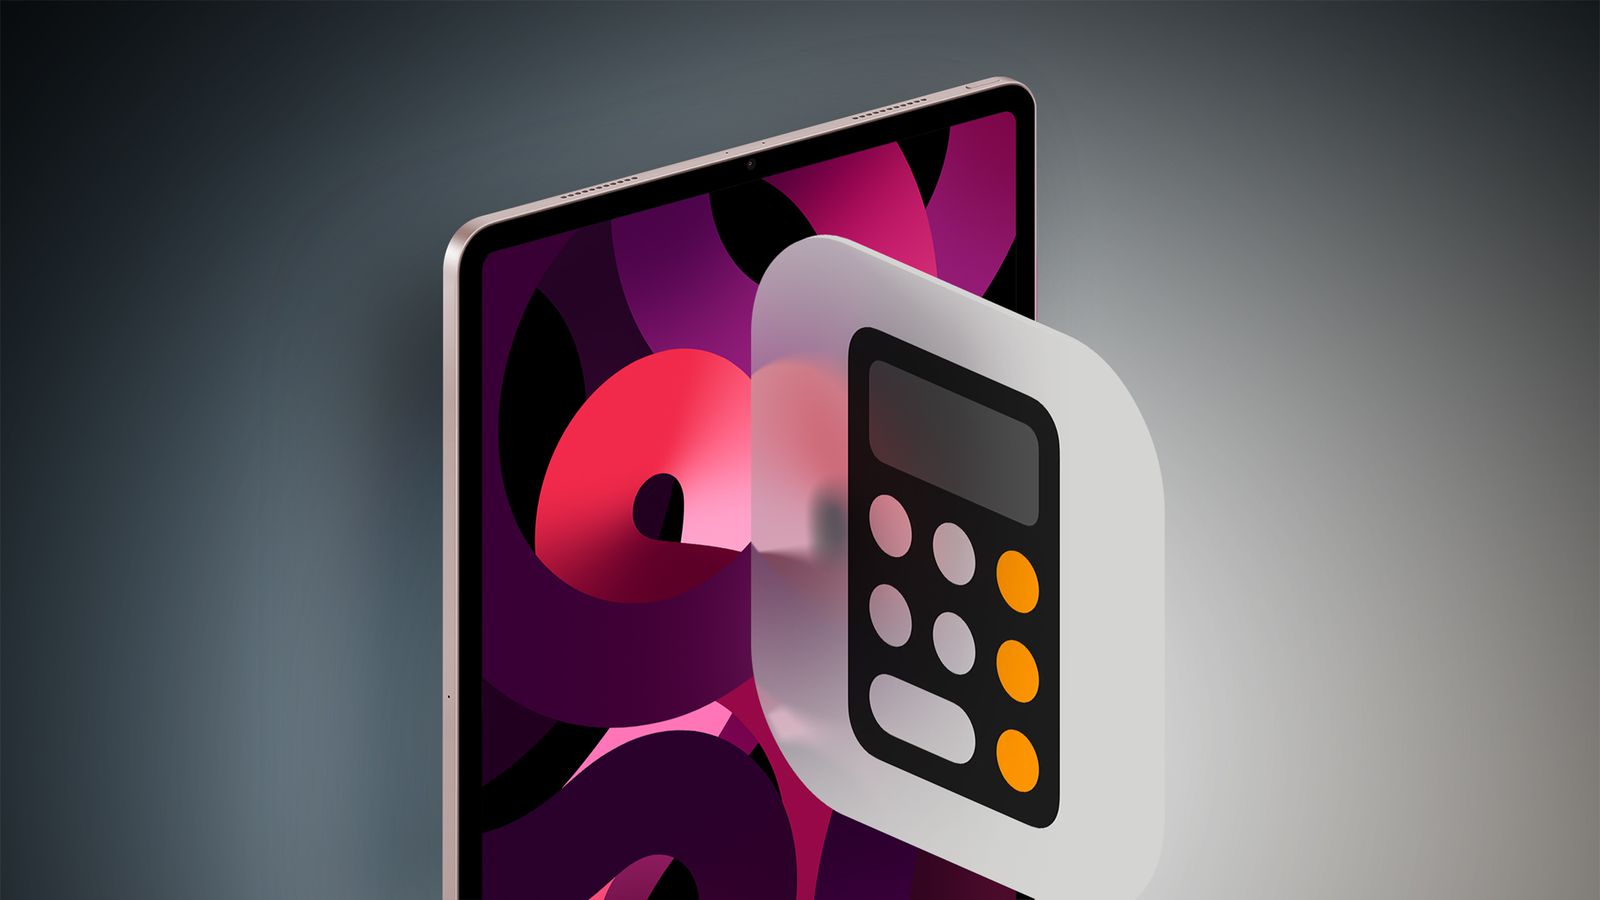 Dari iPhoneIslam.com, tablet digital menampilkan grafik abstrak berwarna-warni di balik ikon kalkulator semi-transparan dengan latar belakang gradien abu-abu pada bulan April.